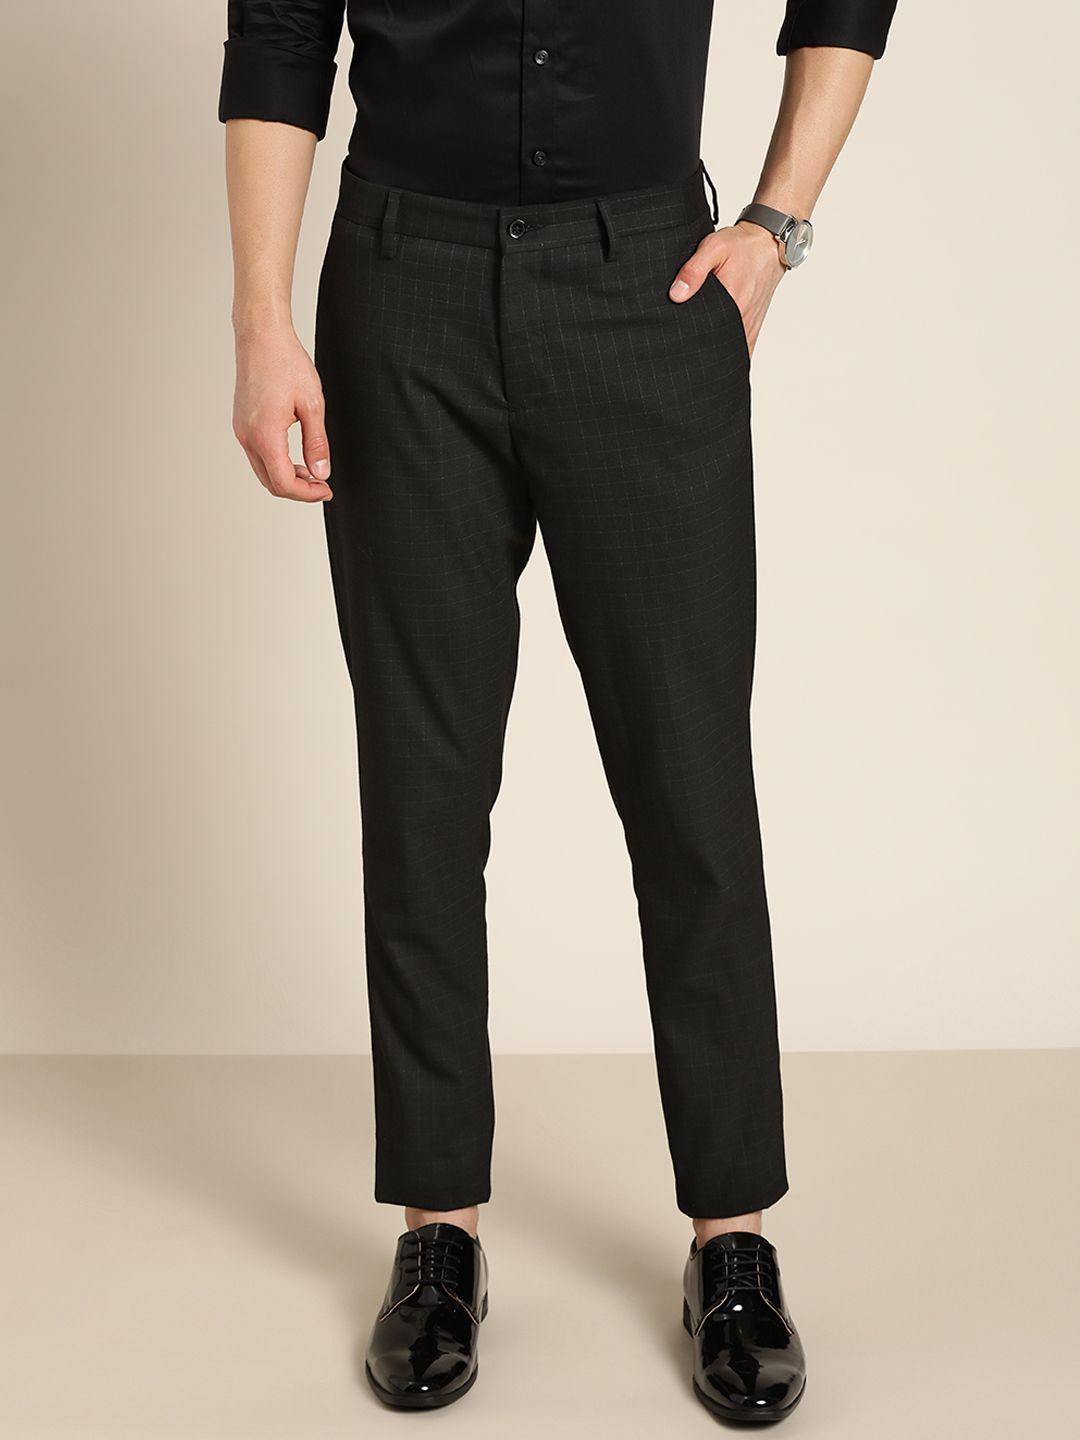 invictus-men-black-checked-trousers